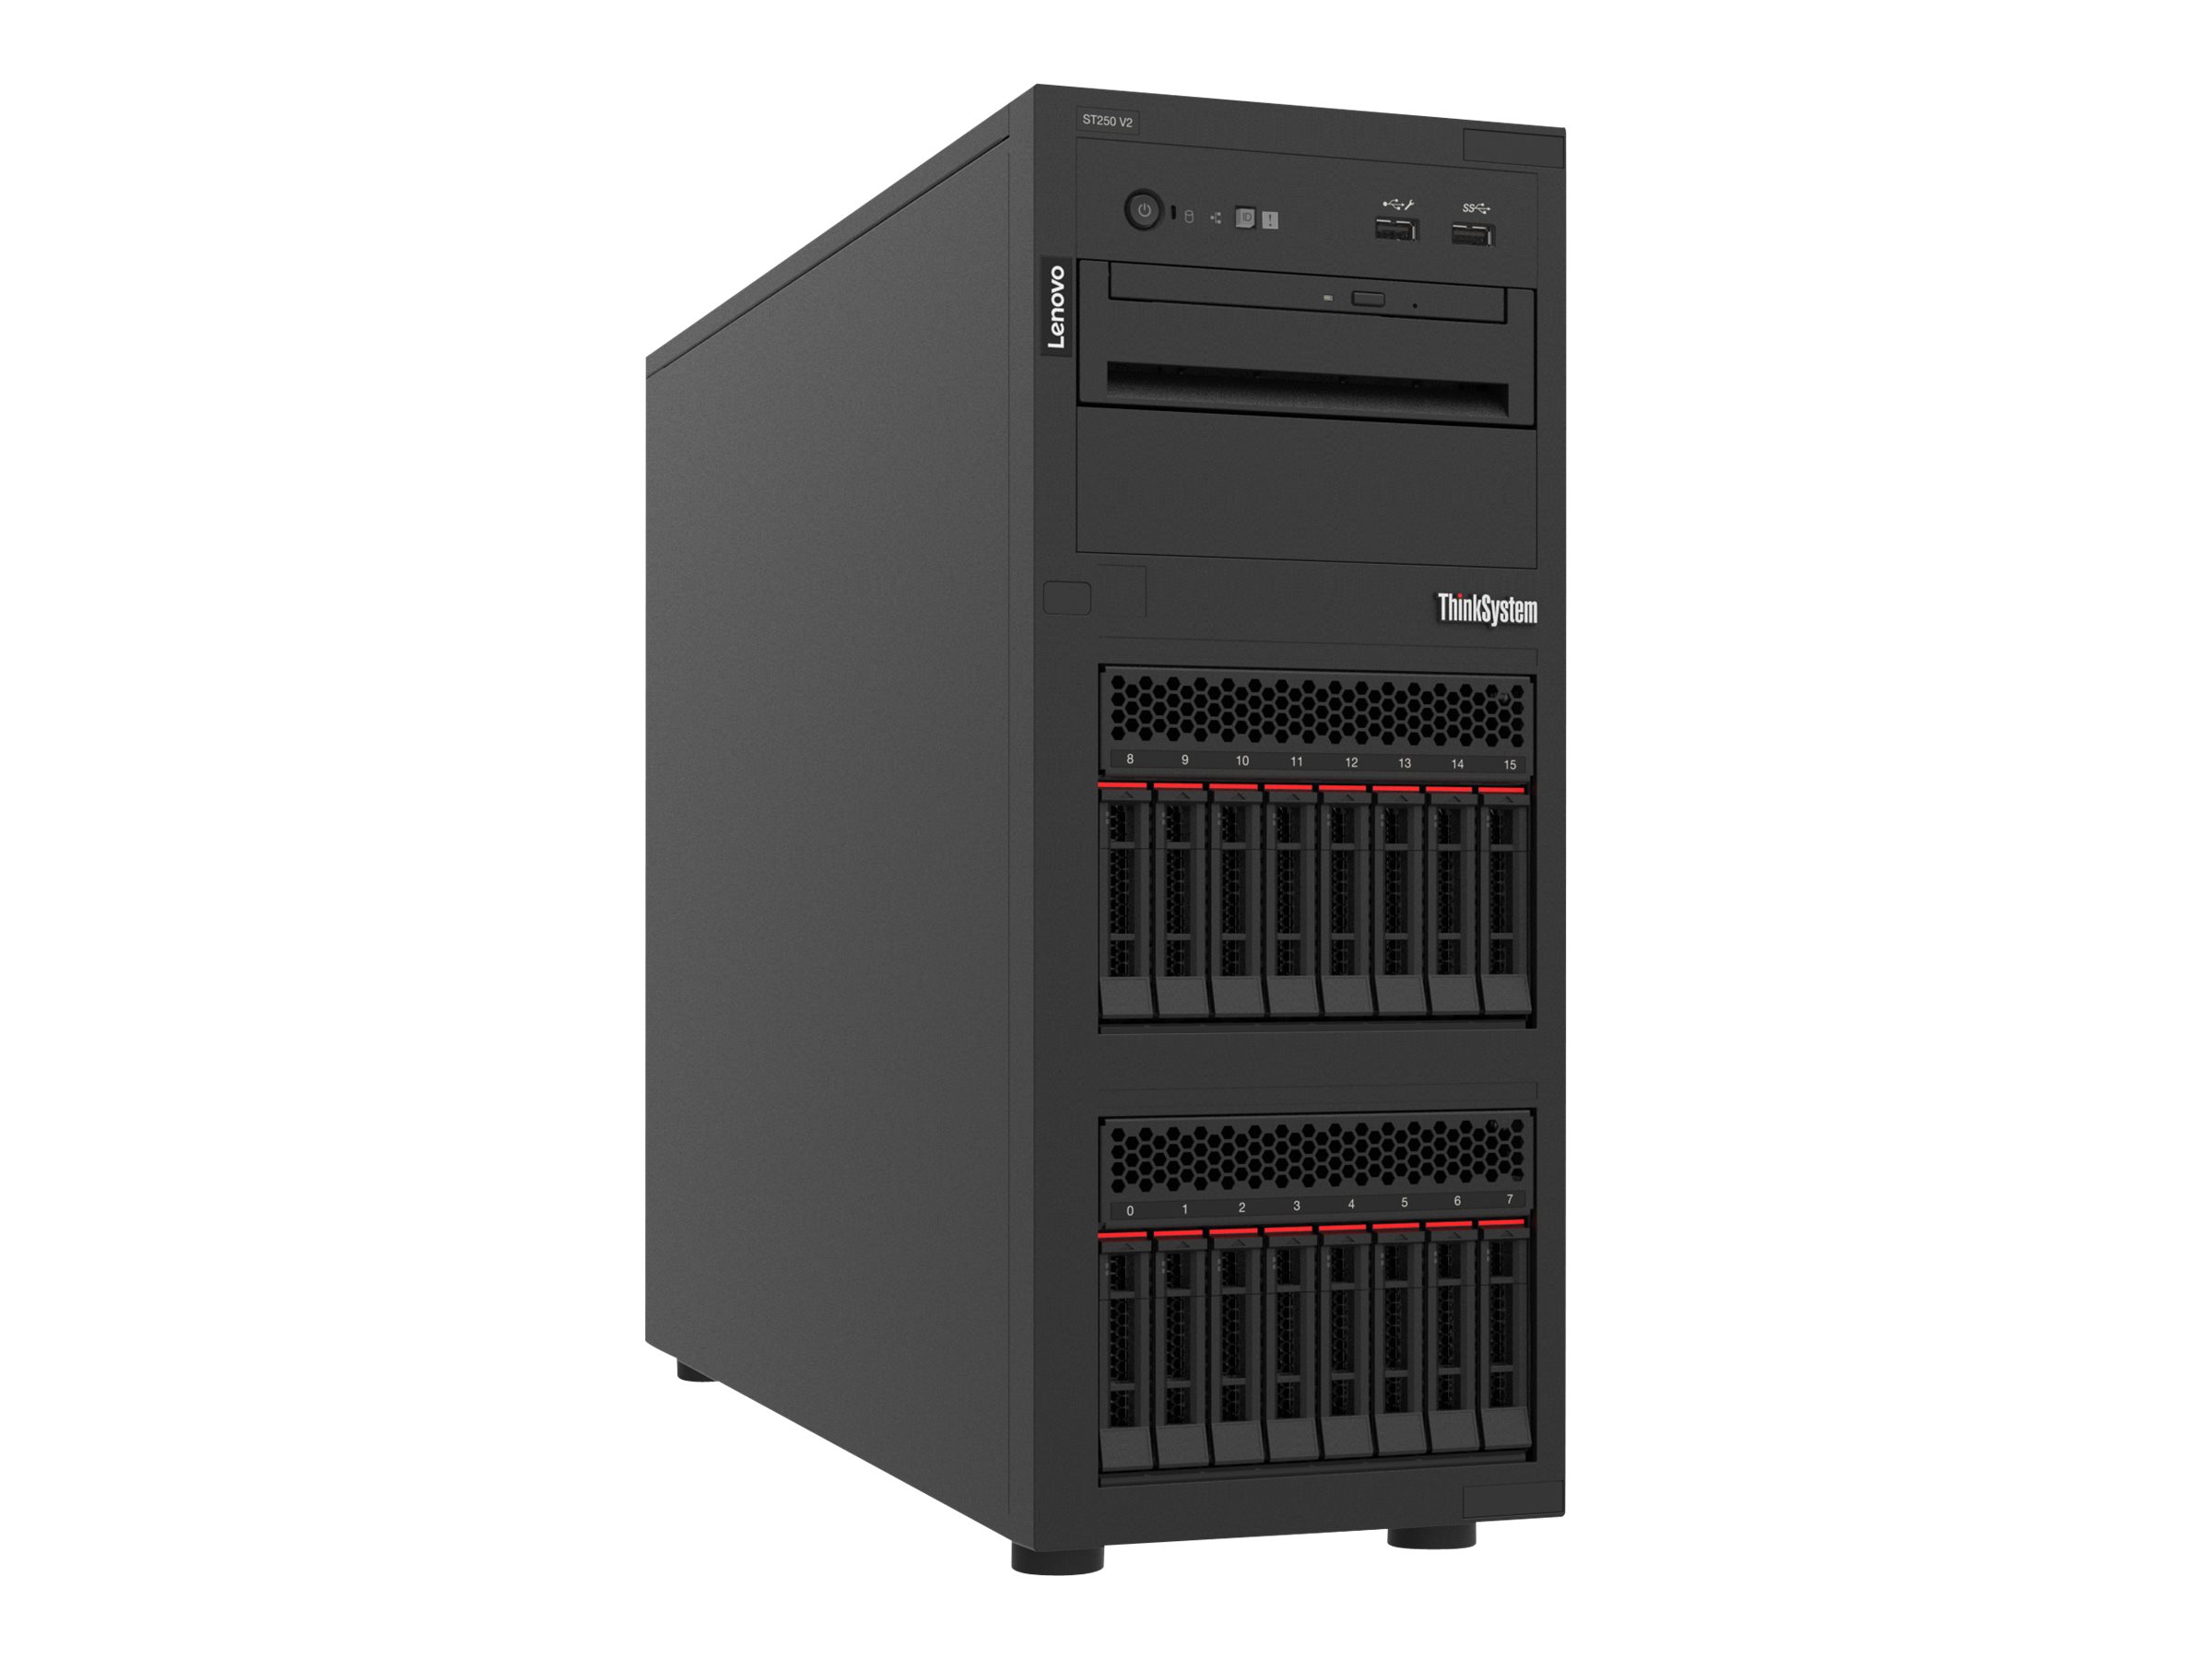 Lenovo ThinkSystem ST250 V2 7D8F - Server - Tower - 4U - 1-Weg - 1 x Xeon E-2378 / 2.6 GHz - RAM 32 GB - Hot-Swap 6.4 cm (2.5") Schacht/Schächte - keine HDD - Matrox G200 - GigE - kein Betriebssystem - Monitor: keiner